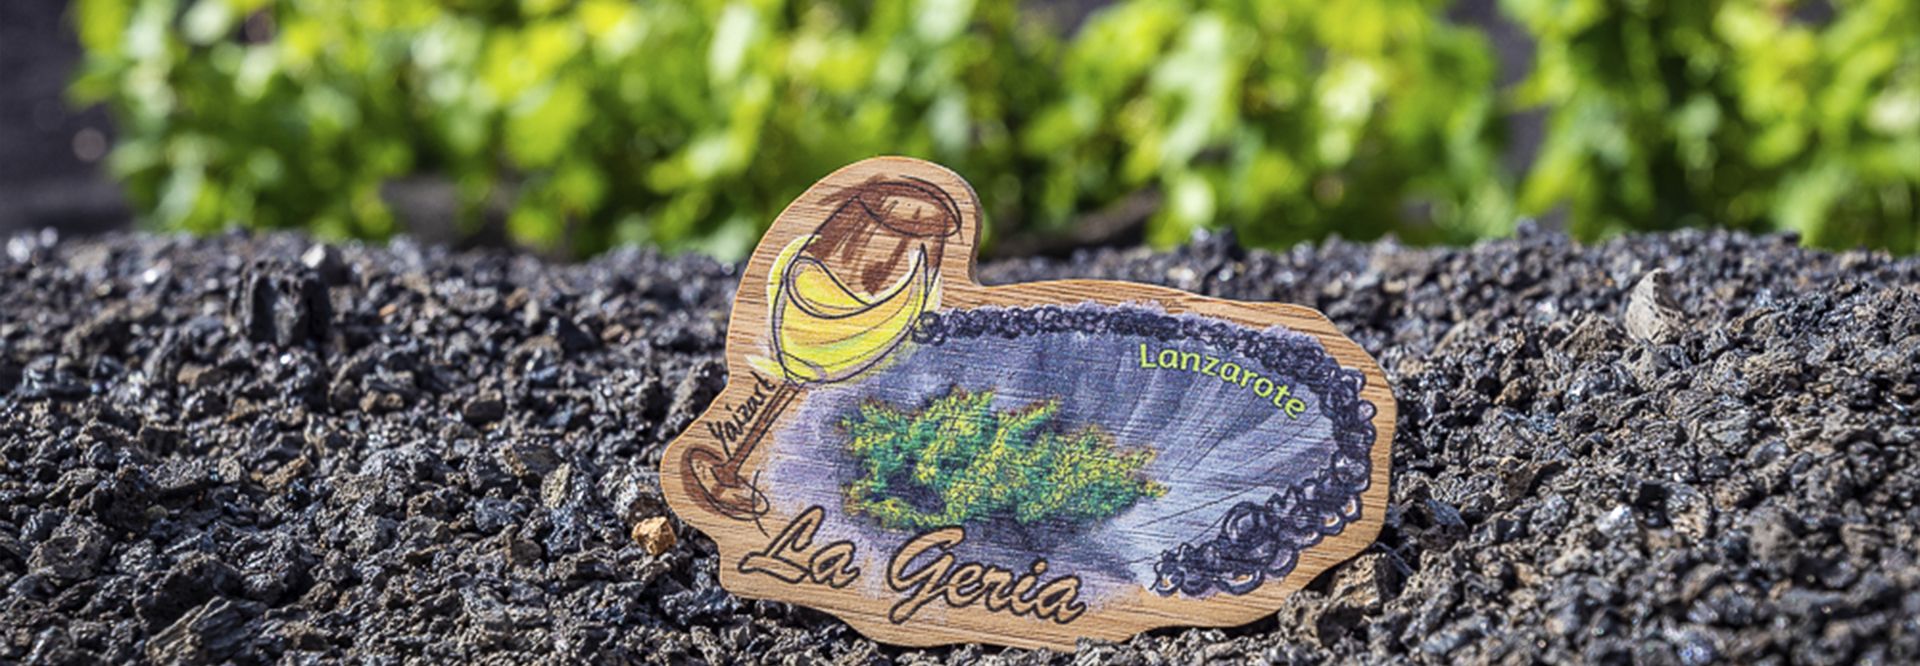 Ruta del vino en La Geria. Guía de turismo y planazos en Lanzarote.